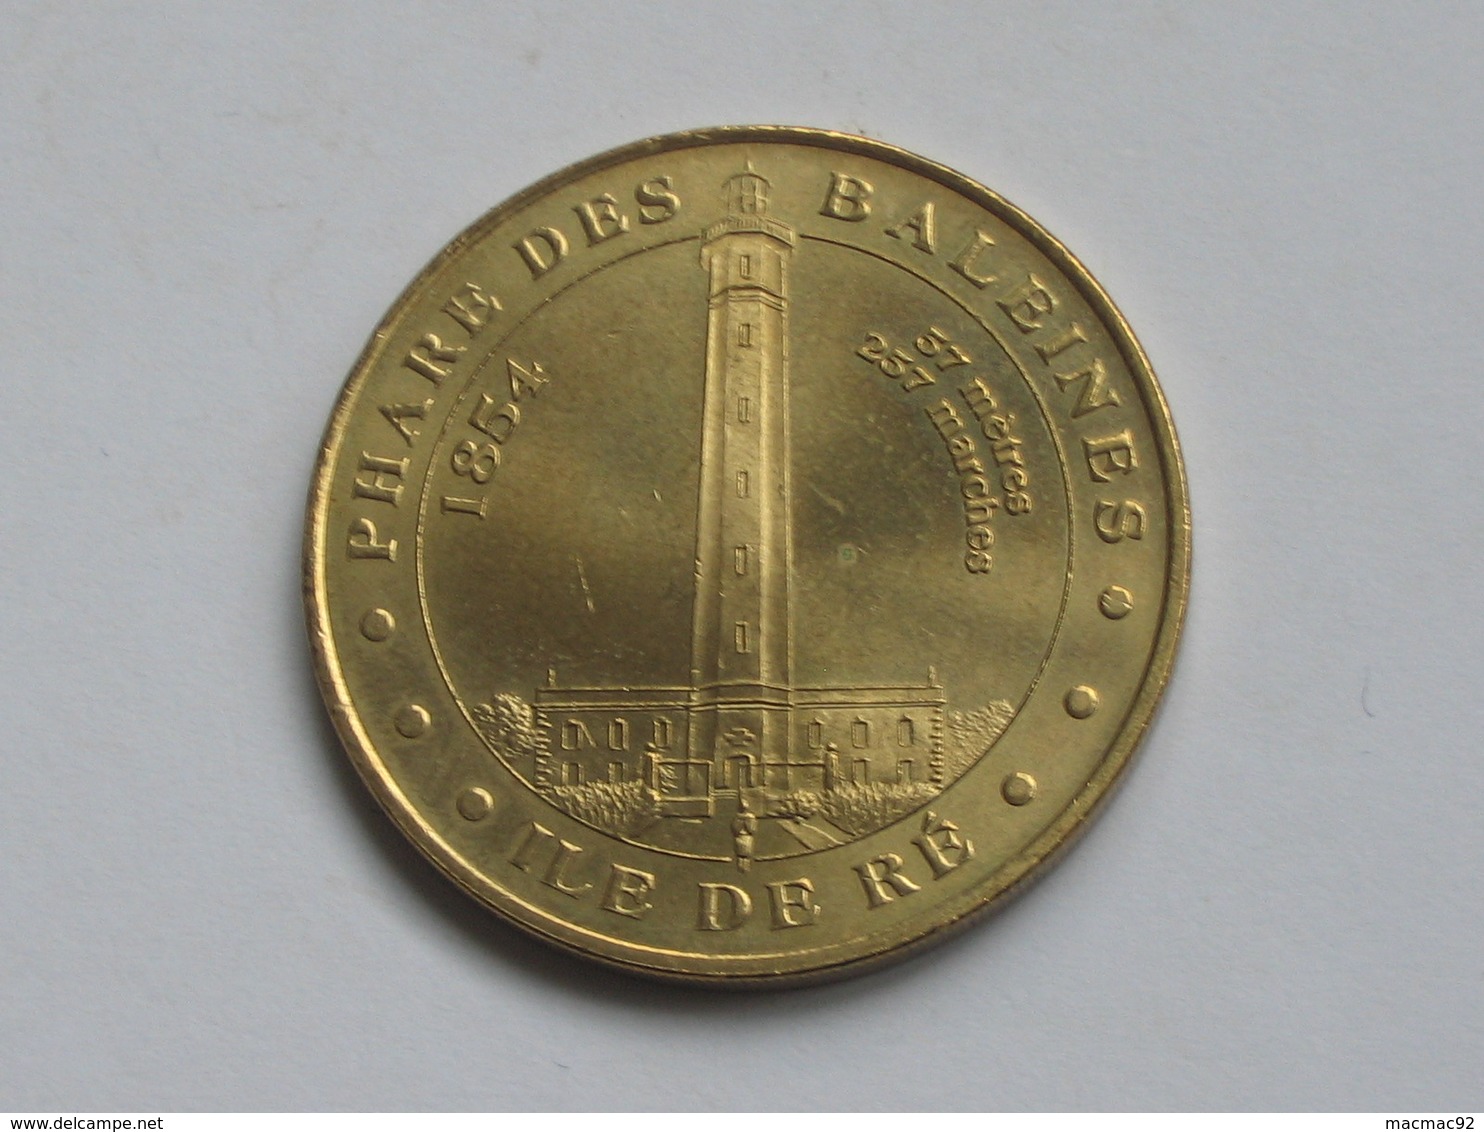 Monnaie De Paris 2005 - ILE DE RE - PHARE DES BALEINES   **** EN ACHAT IMMEDIAT *** - 2005